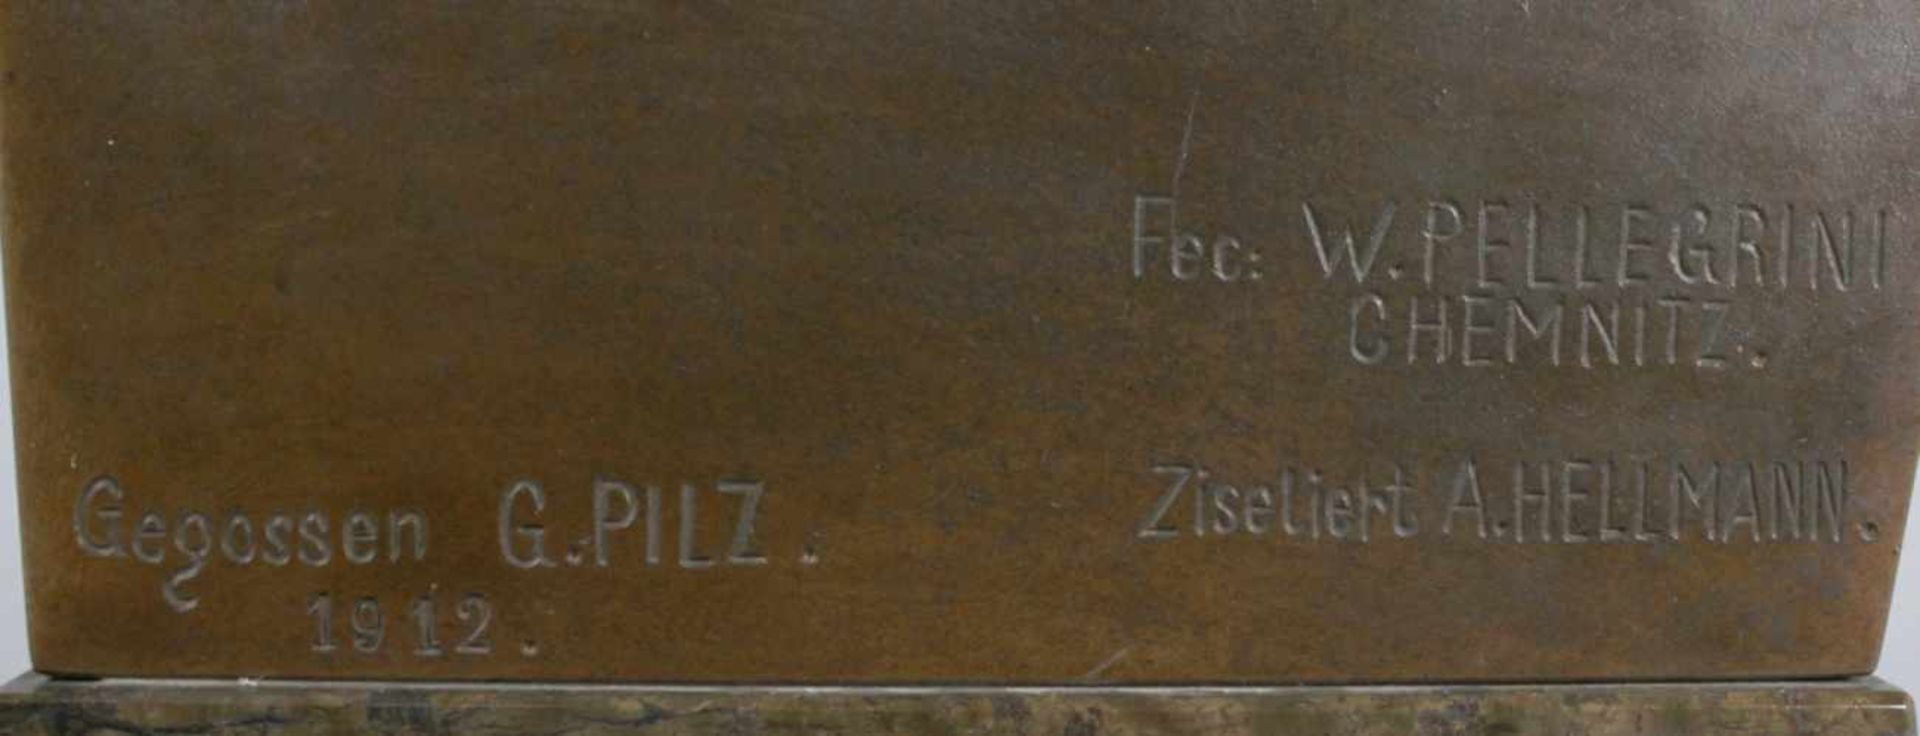 Bronze-Büste, "Der Eiserne Kanzler", um 1900, Pellegrinie, Friedrich Wielhelm, Chemnitz,ziseliert - Bild 3 aus 3